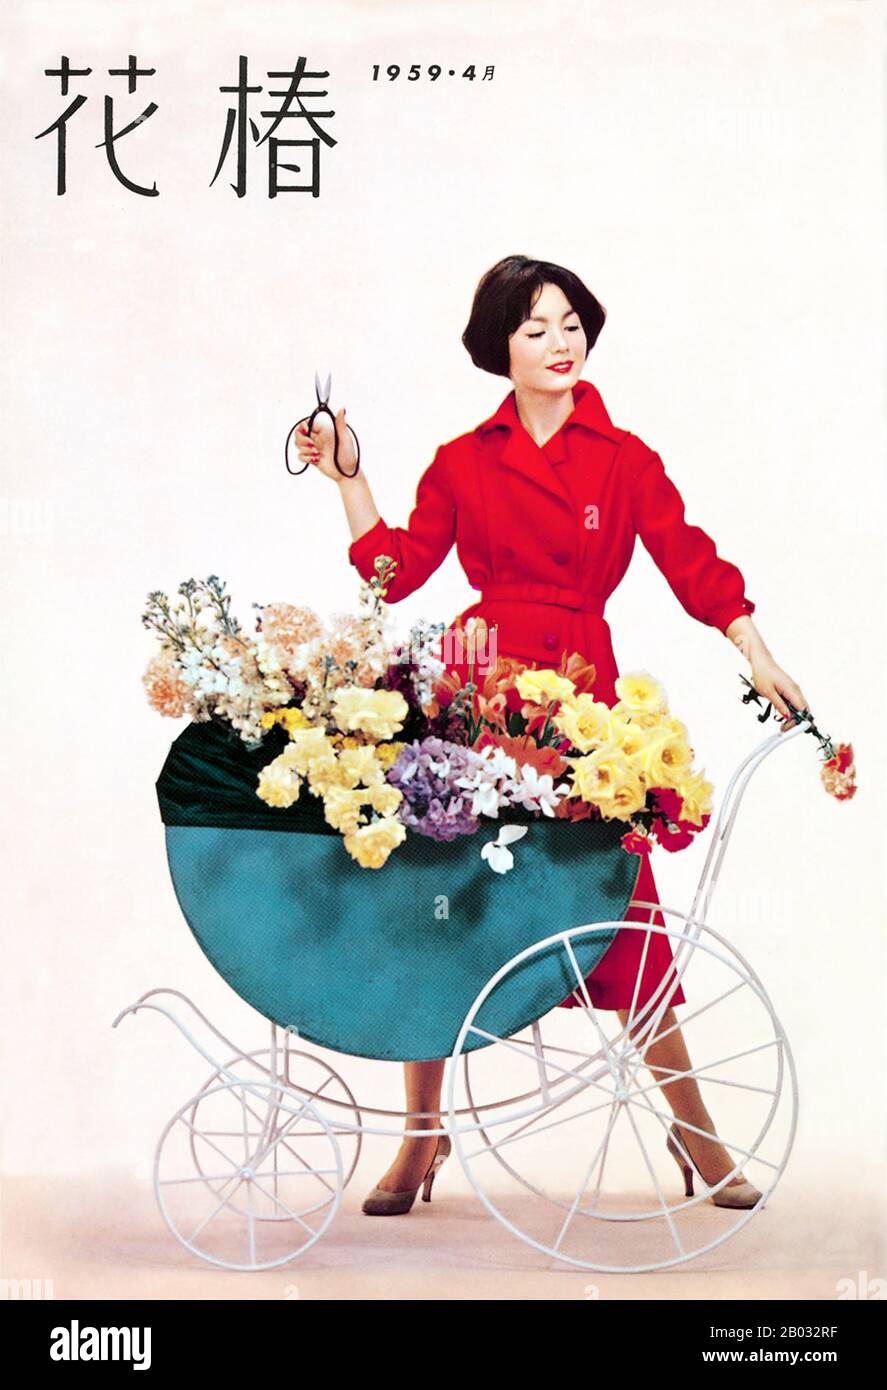 'Hanatsubaki' est un magazine mensuel publié par Shiseido. Il a été publié pour la première fois en 1937. Bien qu'il ait été temporairement abandonné hors de nécessité pendant une période de temps pendant et après la seconde Guerre mondiale, il a repris l'impression en juin 1950, 10 ans après l'arrêt. Le nouveau "Hanatsubaki" reflète une influence culturelle et sociale américaine contemporaine croissante sur la société japonaise, comme l'a fait cette couverture pour avril 1954. Depuis 2007, le magazine a alternativement publié 'iru Hanatsubaki', dans lequel la mode, la beauté, l'art et la culture ont été clairement exprimés sur les pages couleur, et 'Yomu Hanatsub Banque D'Images